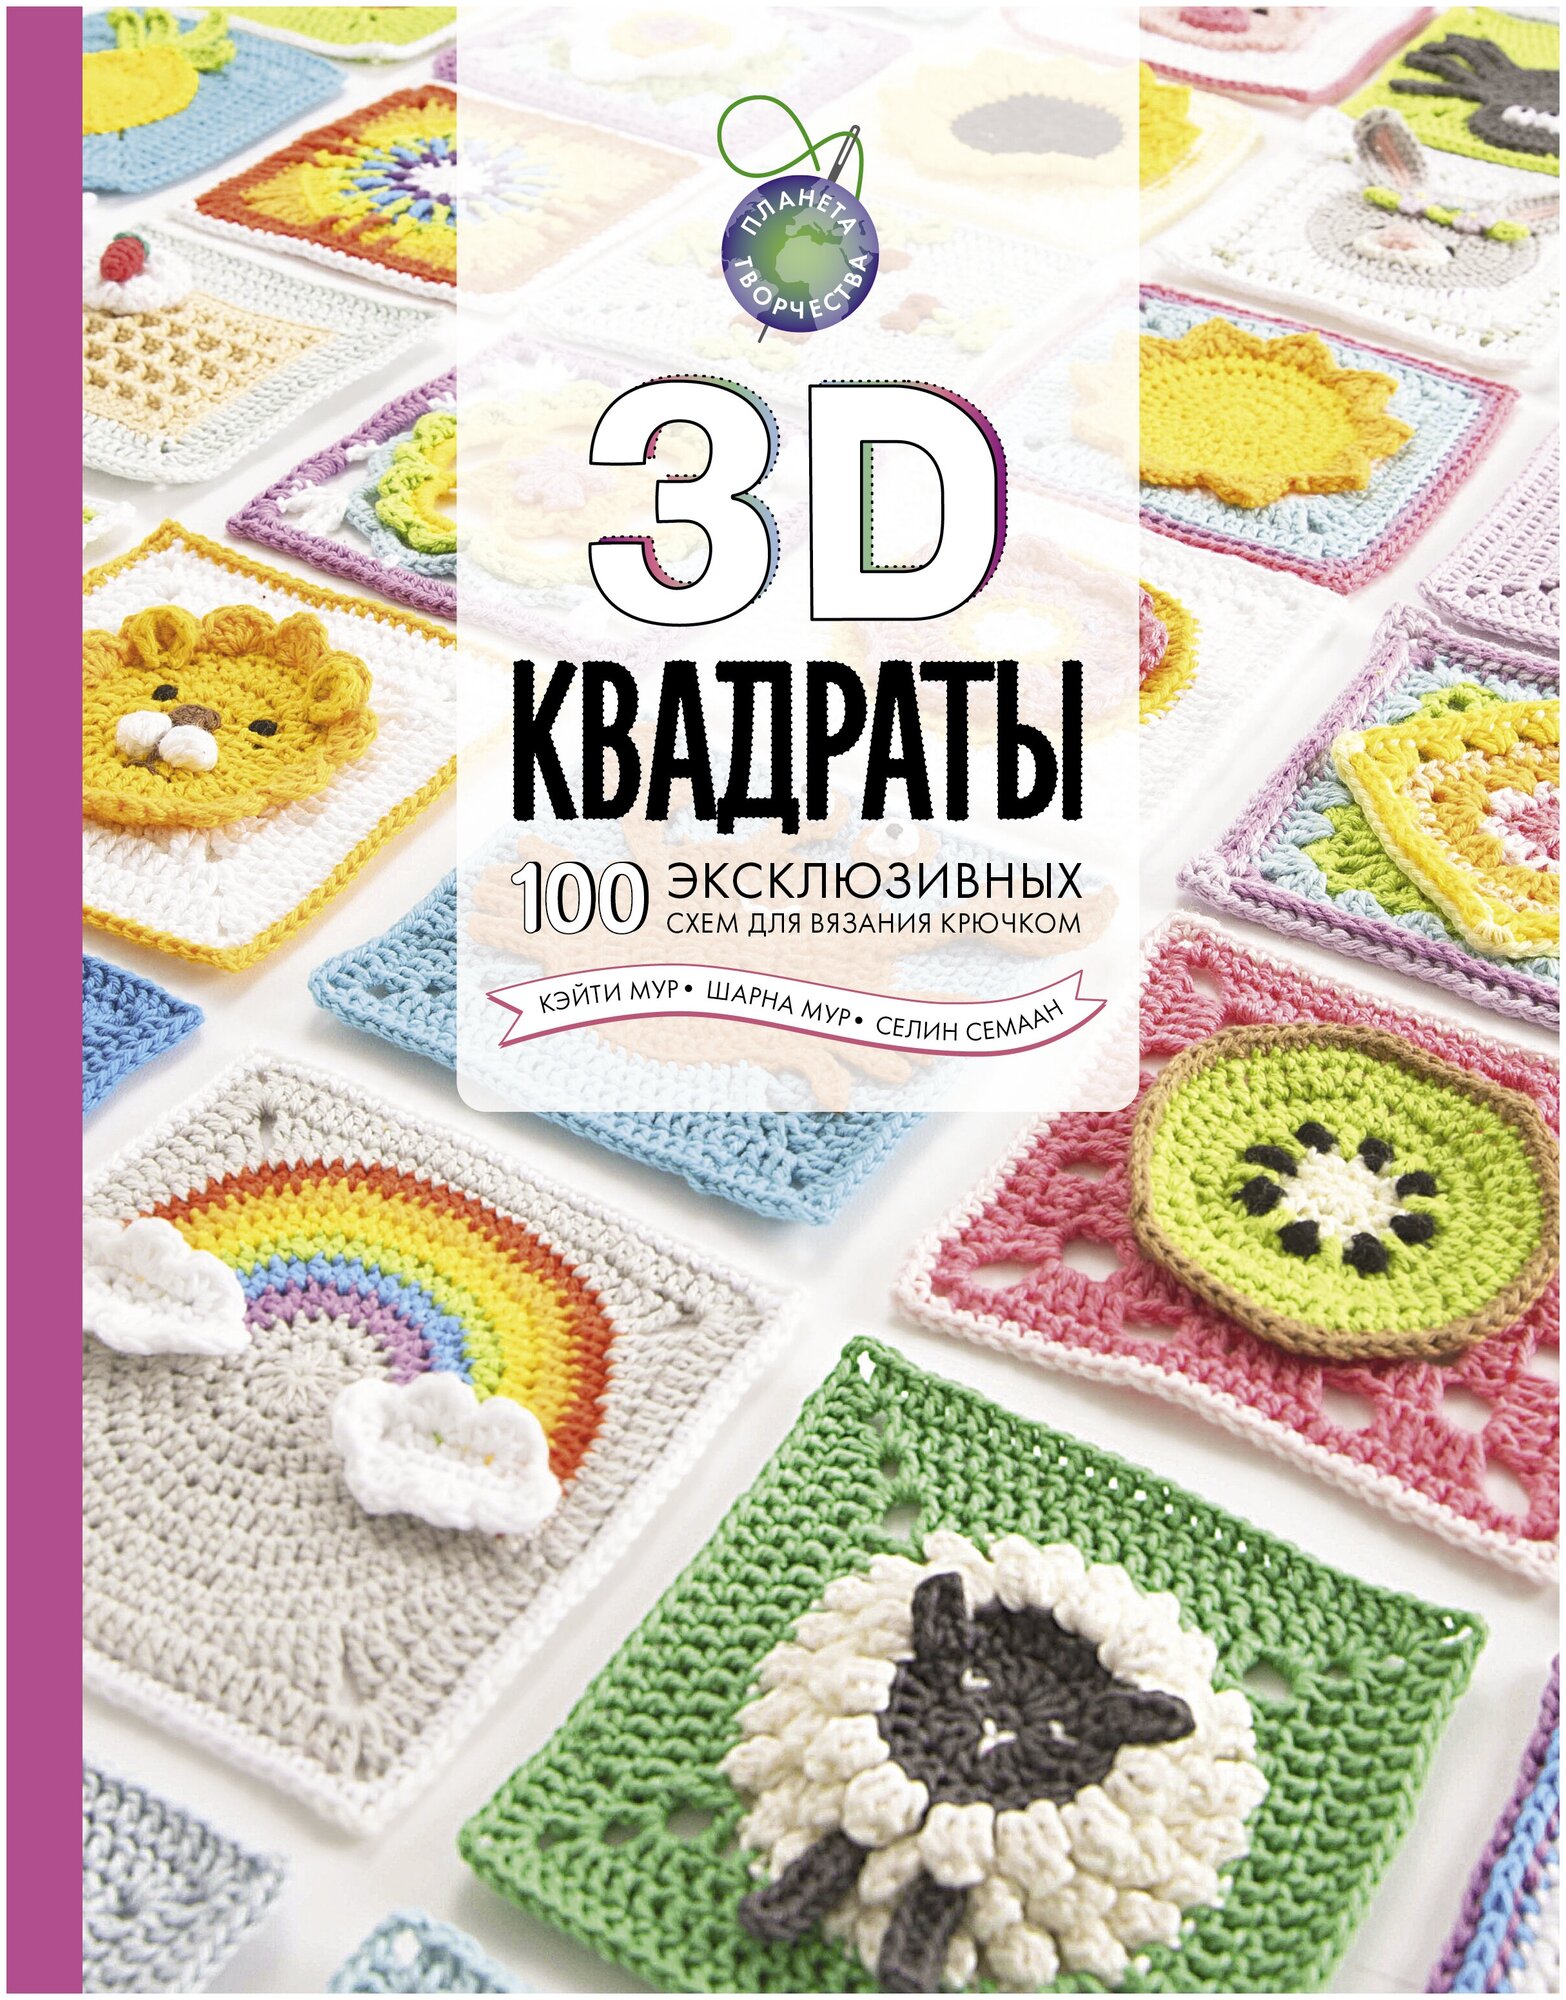 Книги АСТ "3D квадраты. 100 эксклюзивных схем для вязания крючком" Семаан С, Мур Ш, Мур К.